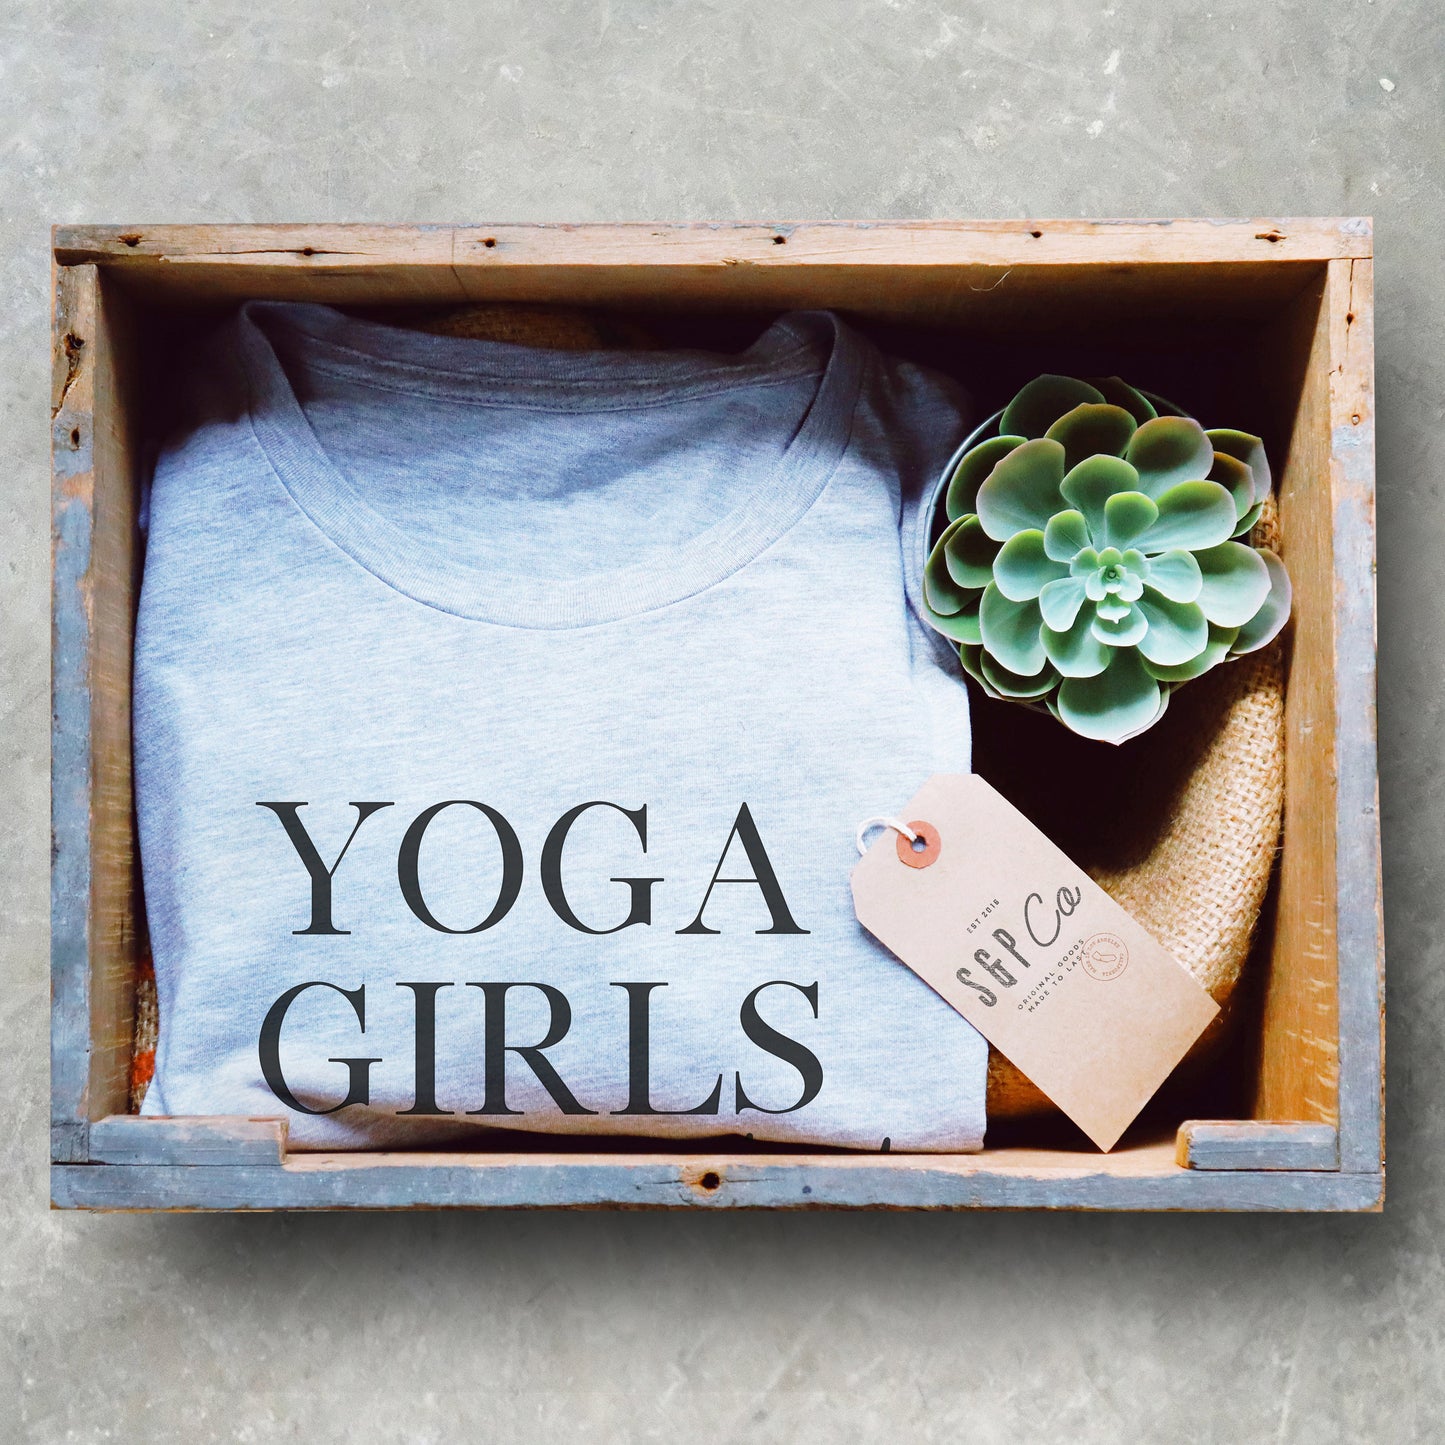 Yoga Girls Are Twisted Unisex Shirt - Yoga Shirt, Zen Yoga Clothing, Yoga Workout Clothes, Yoga Wear, Yoga Clothes, Yoga T Shirts Funny